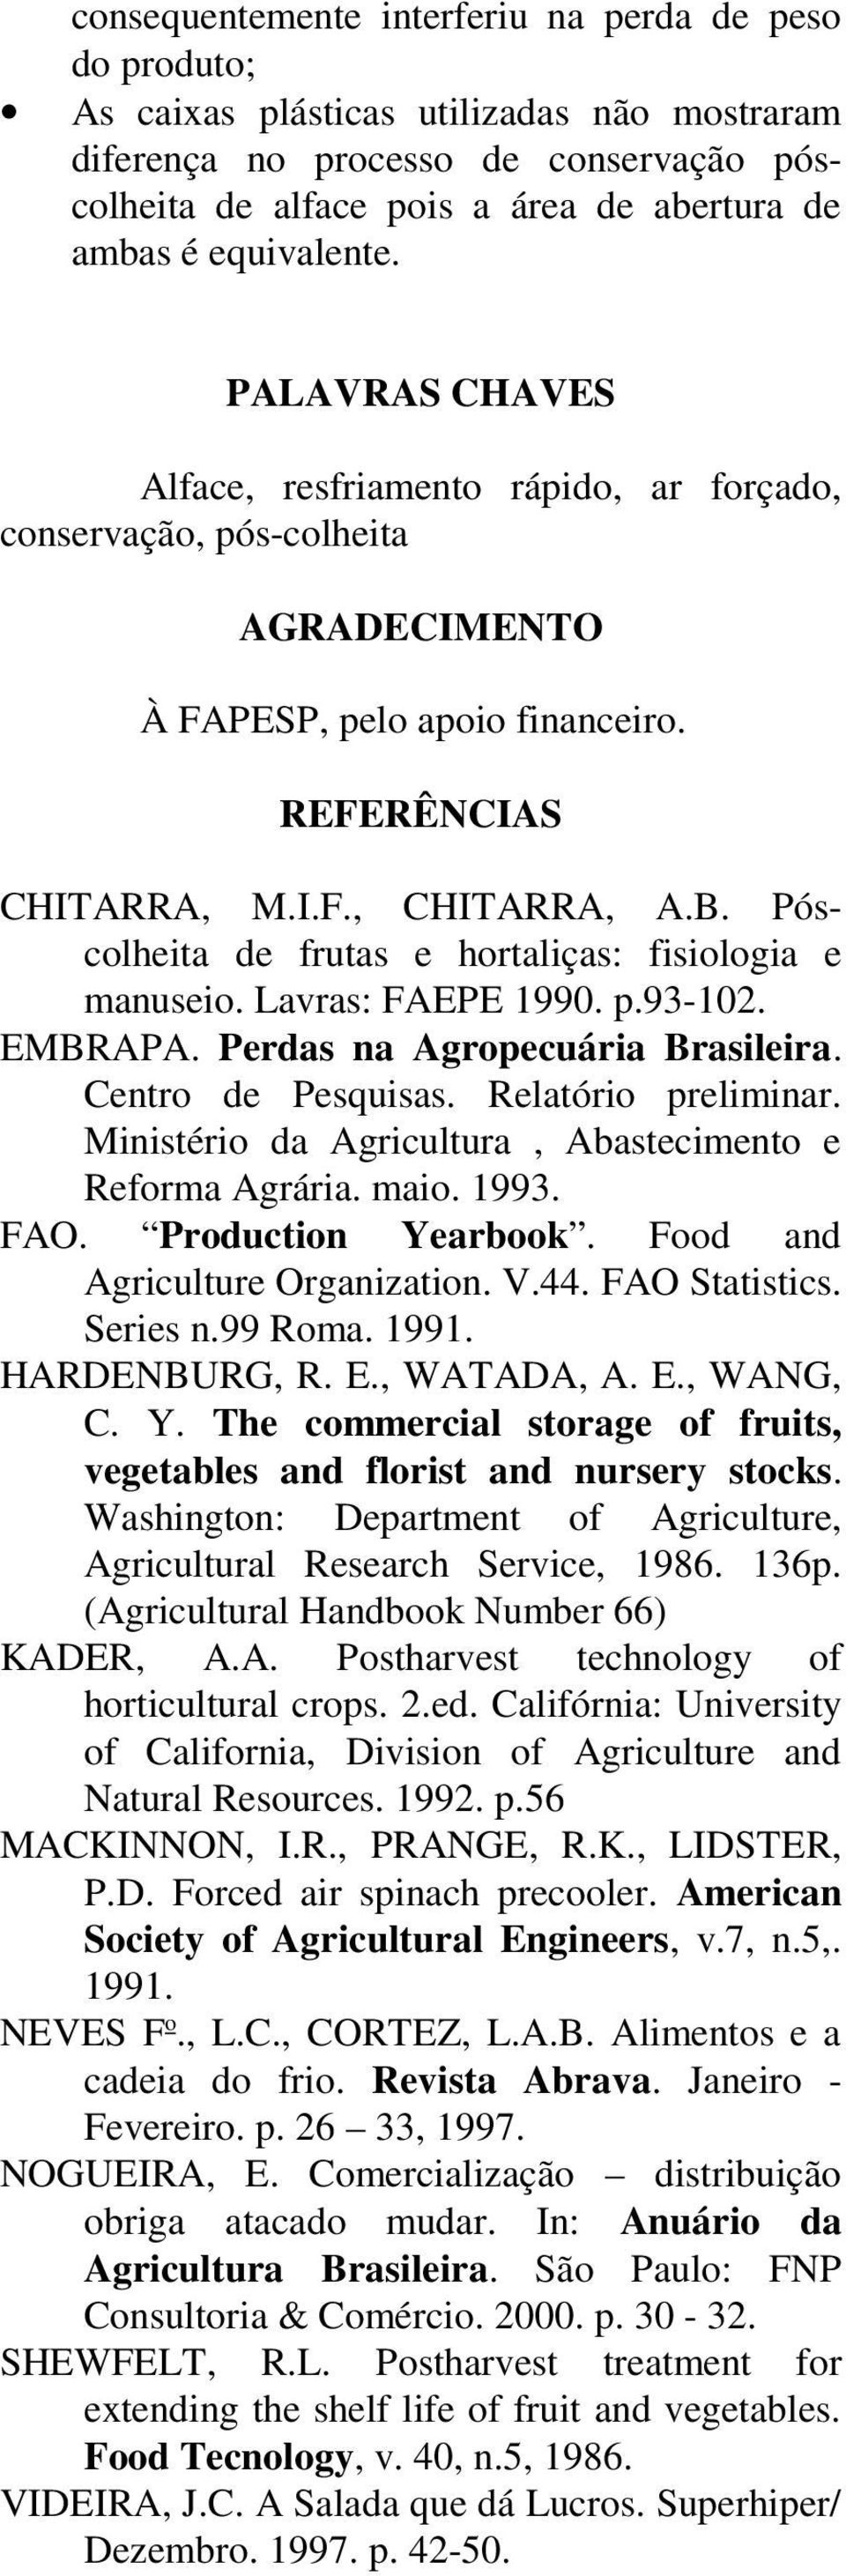 Póscolheita de frutas e hortaliças: fisiologia e manuseio. Lavras: FAEPE 990. p.9-0. EMBRAPA. Perdas na Agropecuária Brasileira. Centro de Pesquisas. Relatório preliminar.